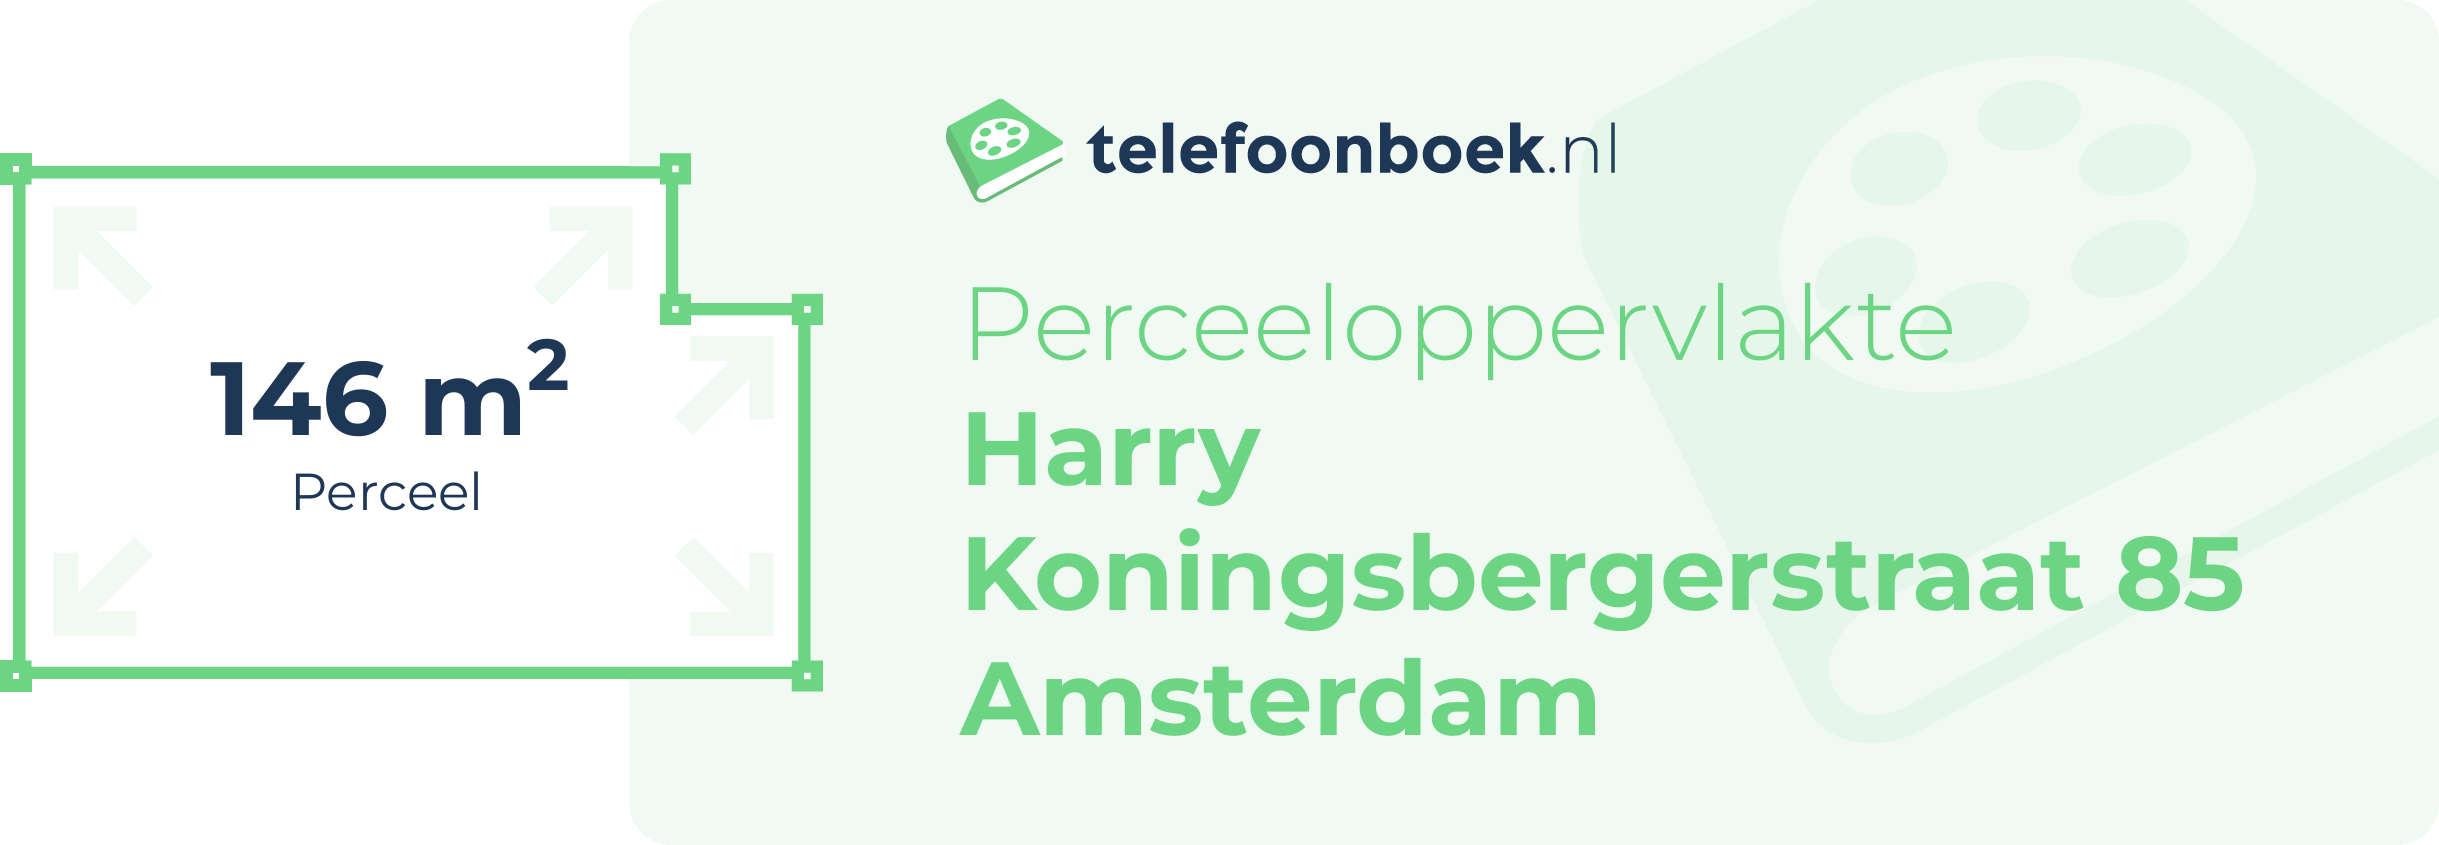 Perceeloppervlakte Harry Koningsbergerstraat 85 Amsterdam